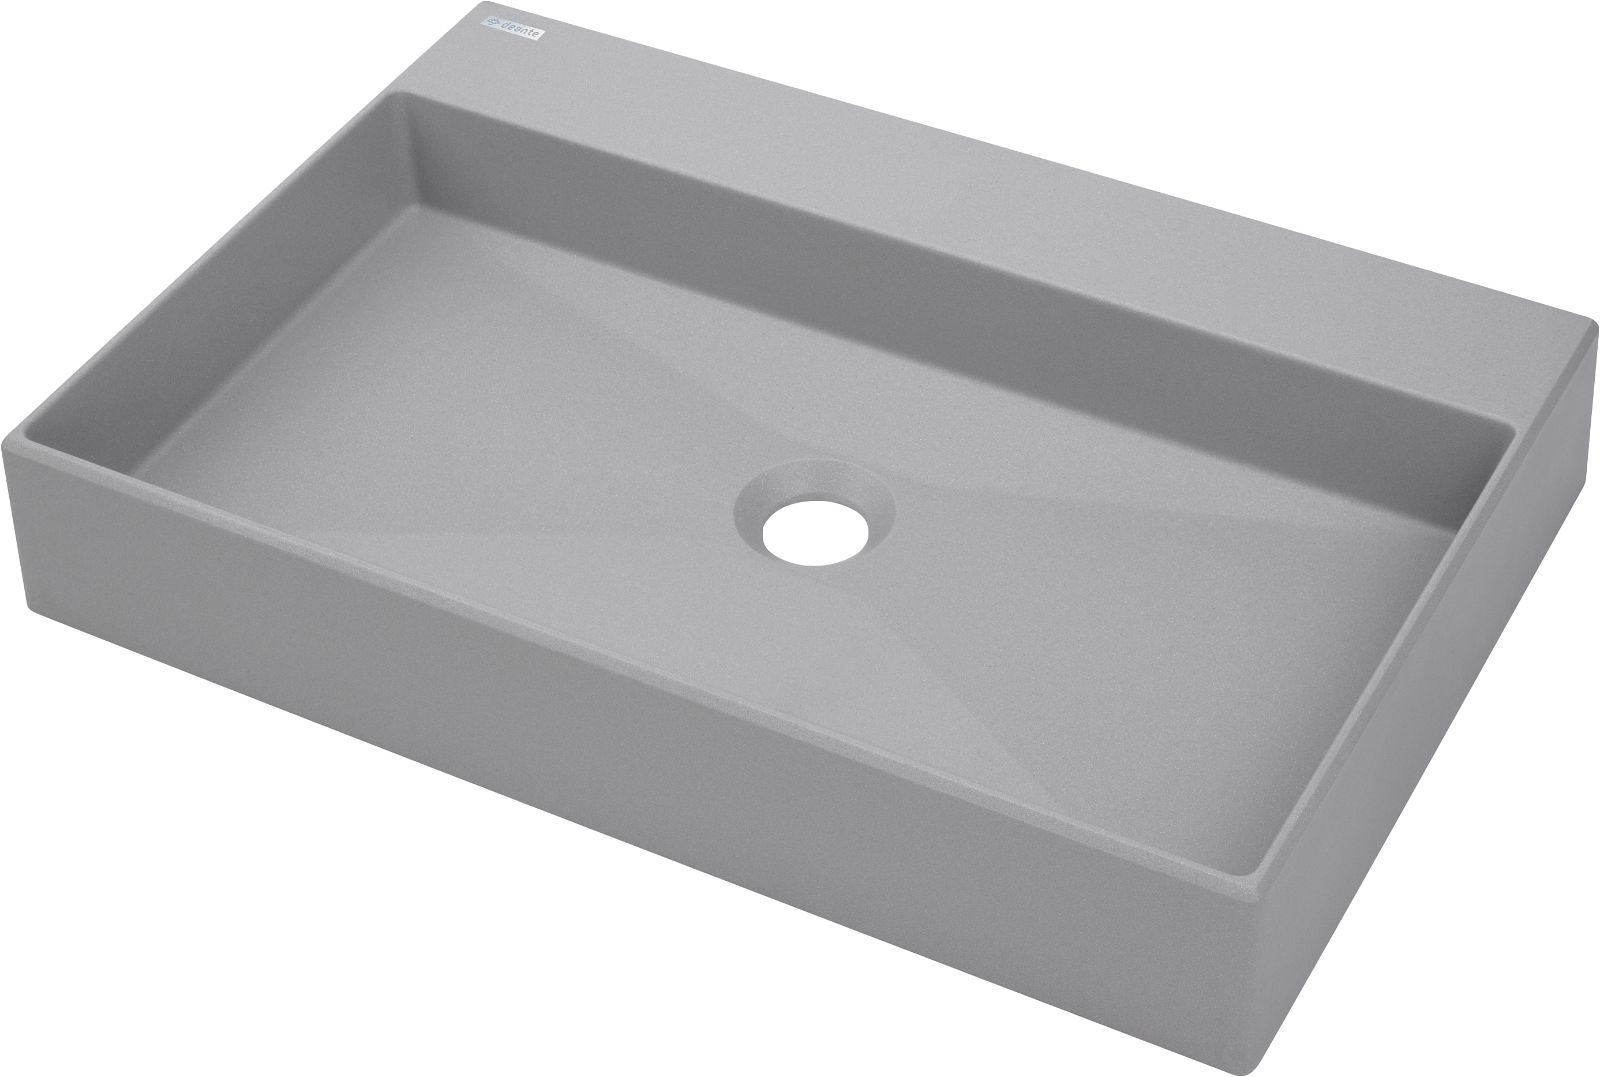 Granite washbasin, countertop - 60x40 cm - CQR_SU6S - Główne zdjęcie produktowe